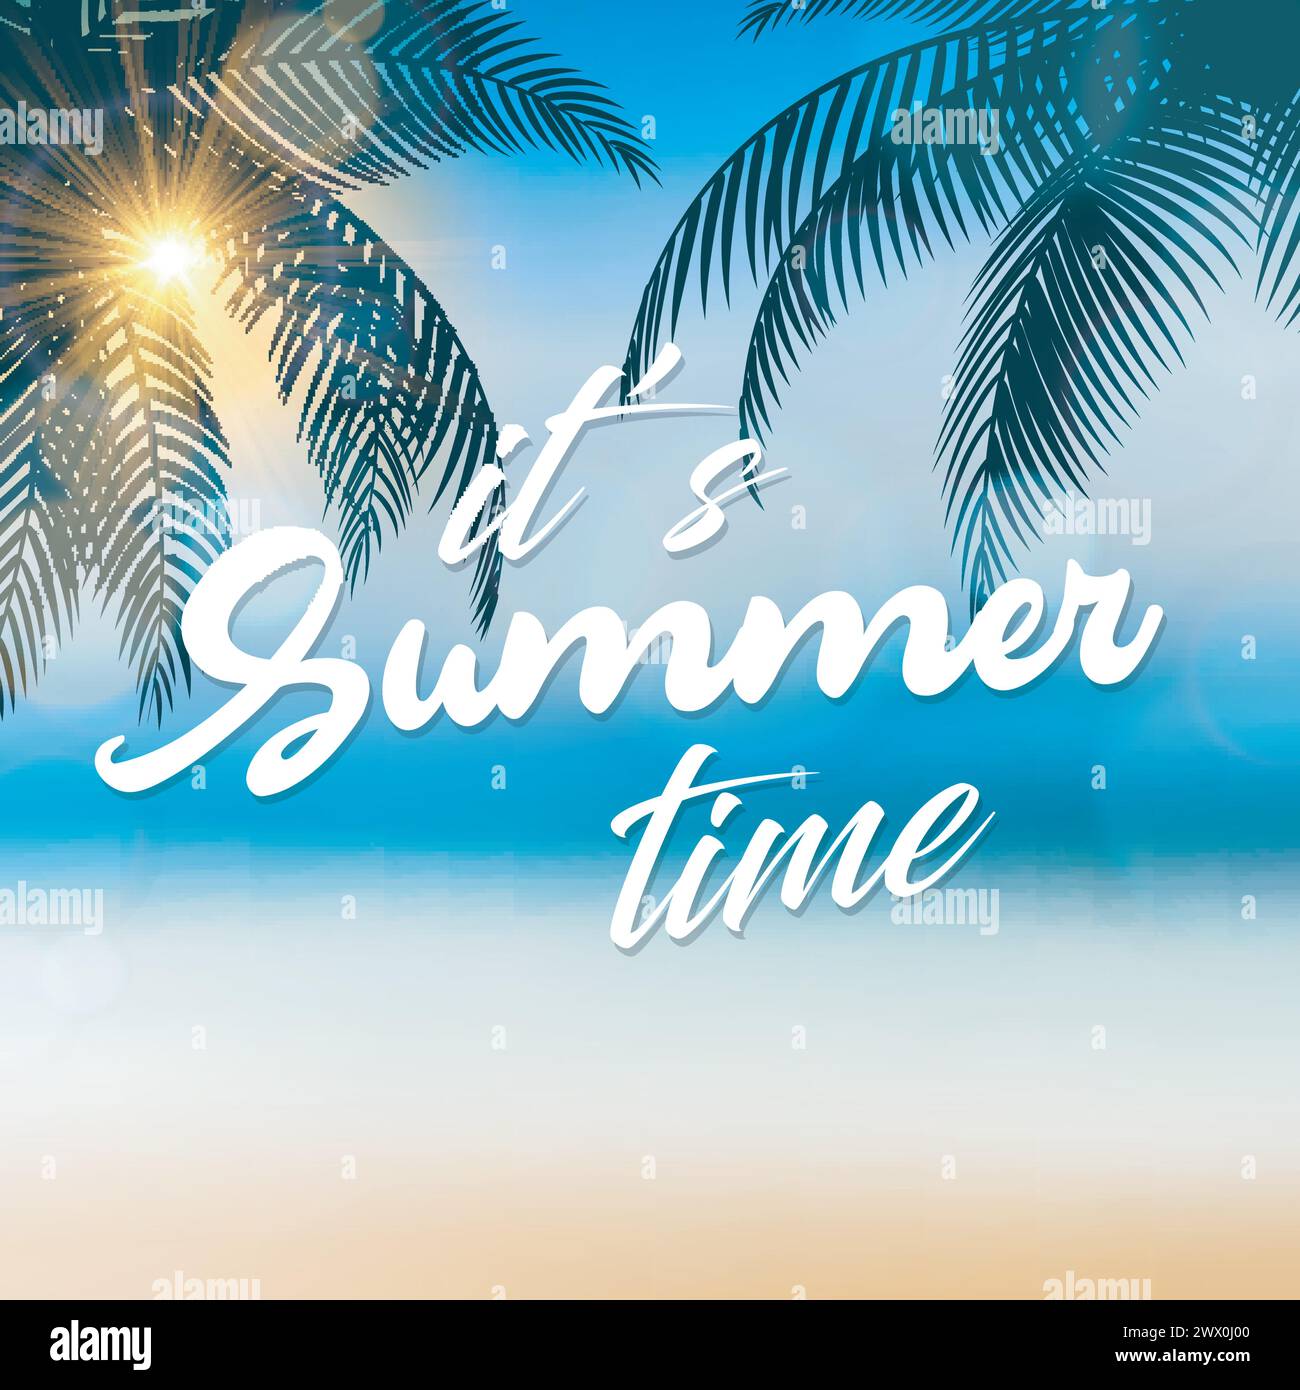 È l'insegna del tempo estivo, con palme da cocco al mare, adatta per le vacanze estive e la festa in spiaggia, illustrazione vettoriale Illustrazione Vettoriale